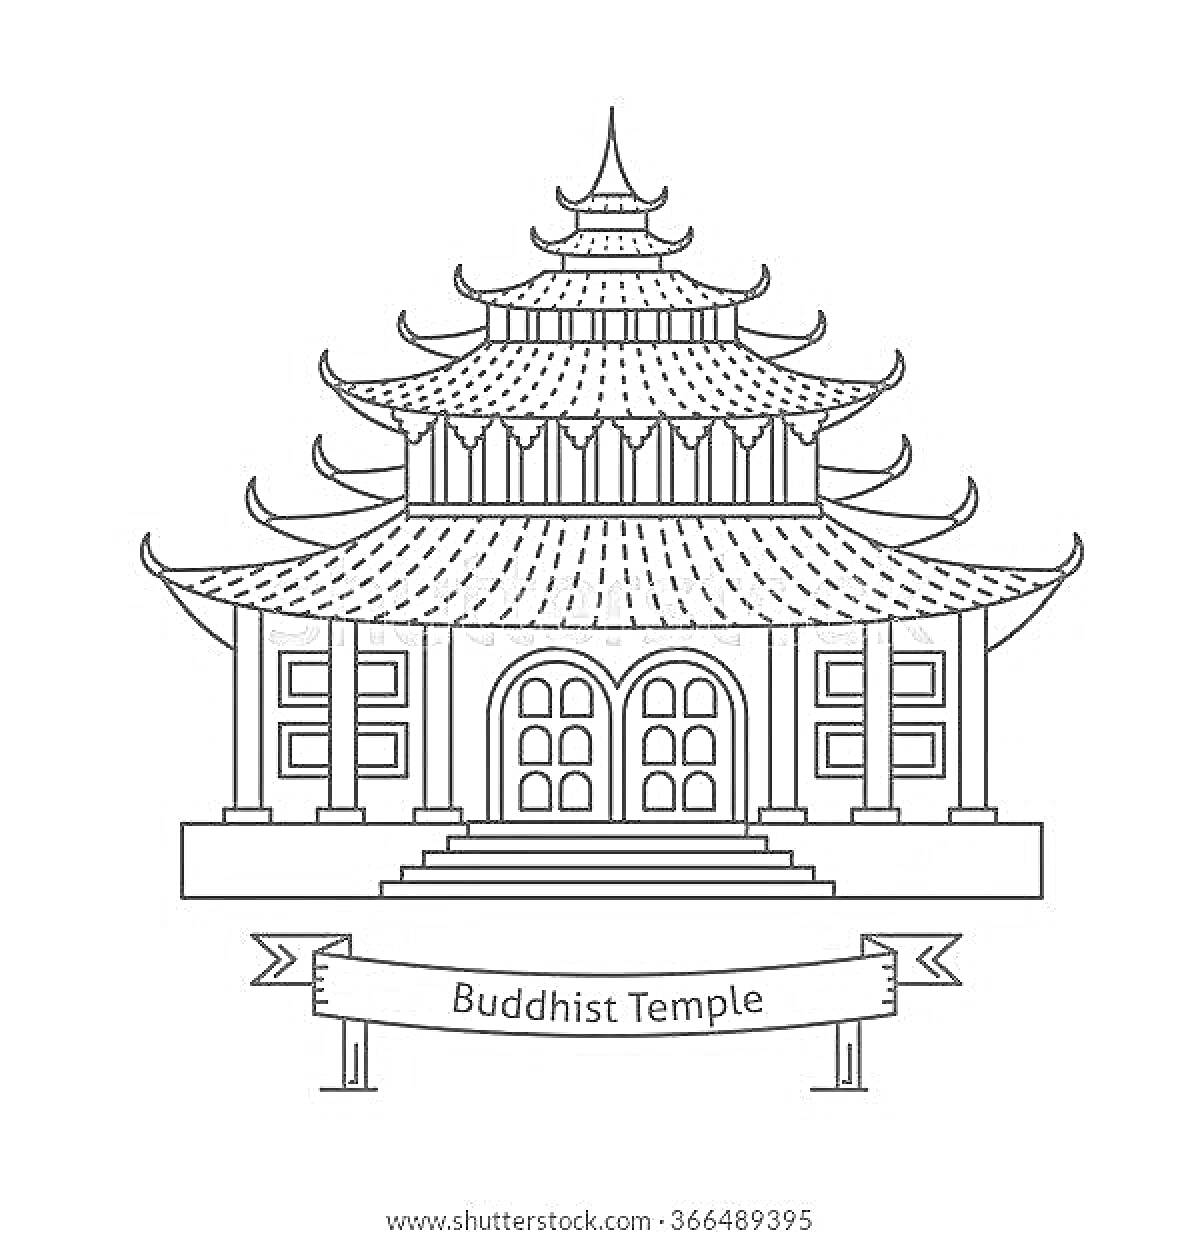 Раскраска Пагода с многоуровневой крышей, колоннами и декоративной вывеской